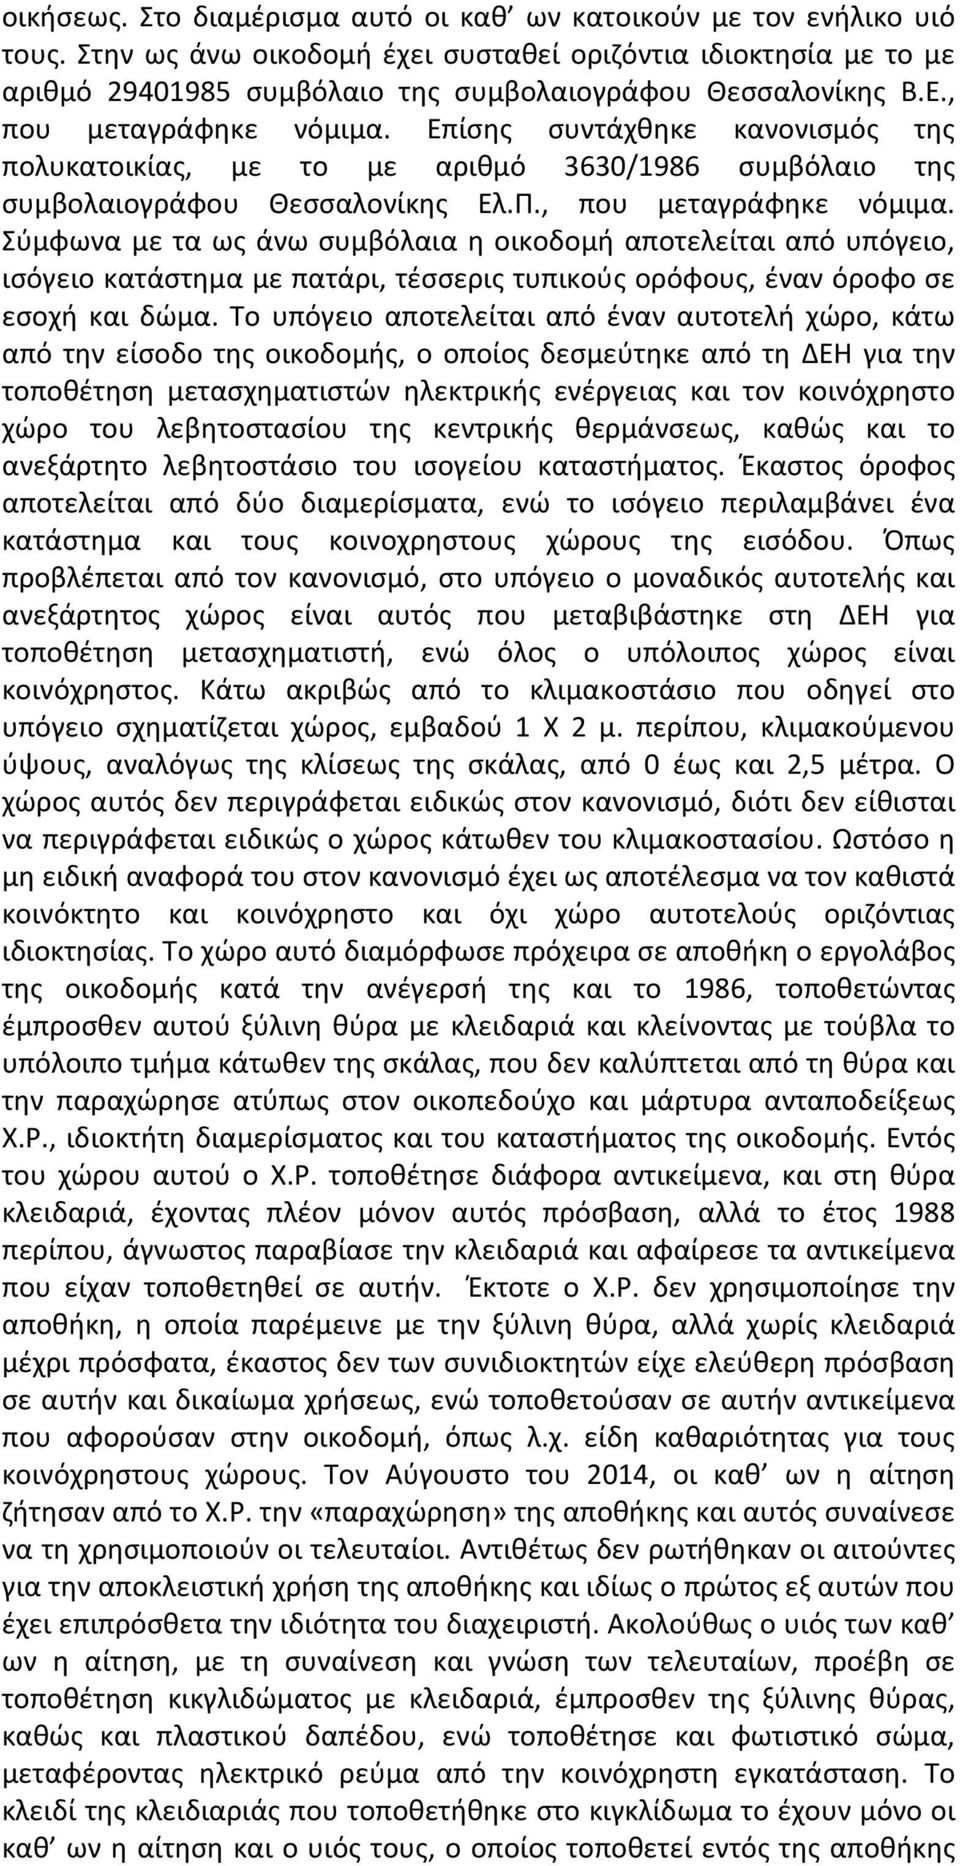 Επίσης συντάχθηκε κανονισμός της πολυκατοικίας, με το με αριθμό 3630/1986 συμβόλαιο της συμβολαιογράφου Θεσσαλονίκης Ελ.Π., που μεταγράφηκε νόμιμα.